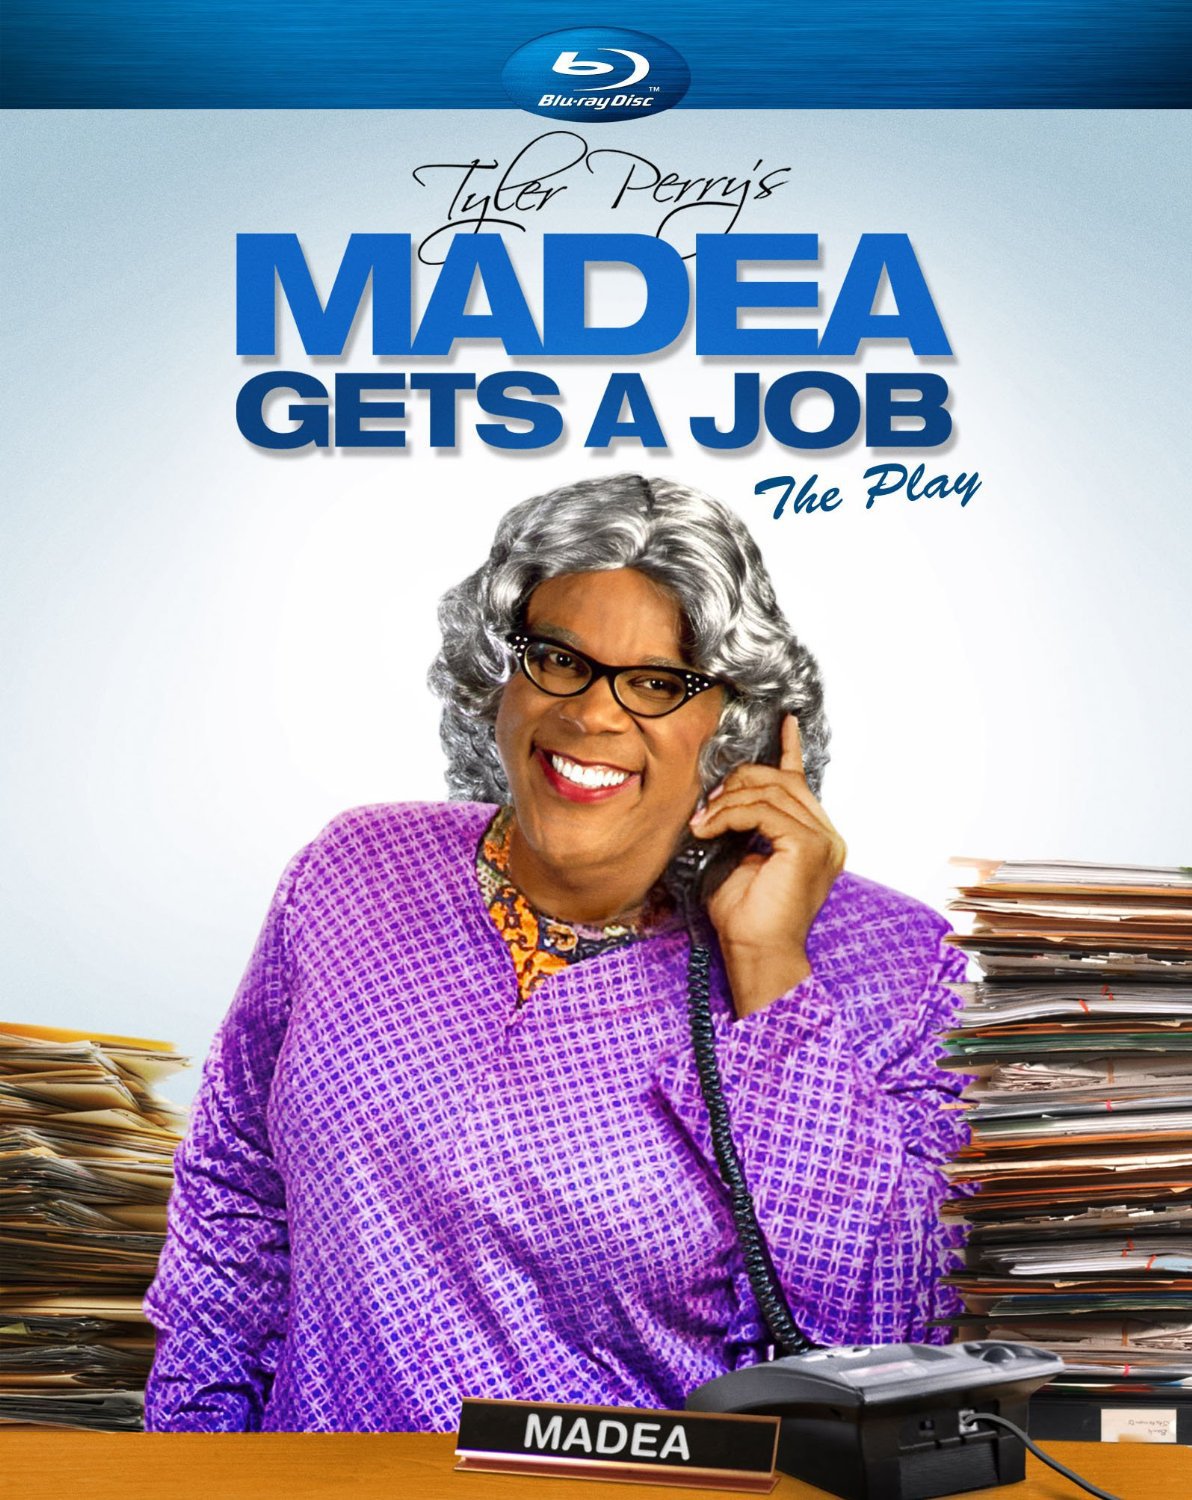 Tyler Perrys: Madea Gets a Job